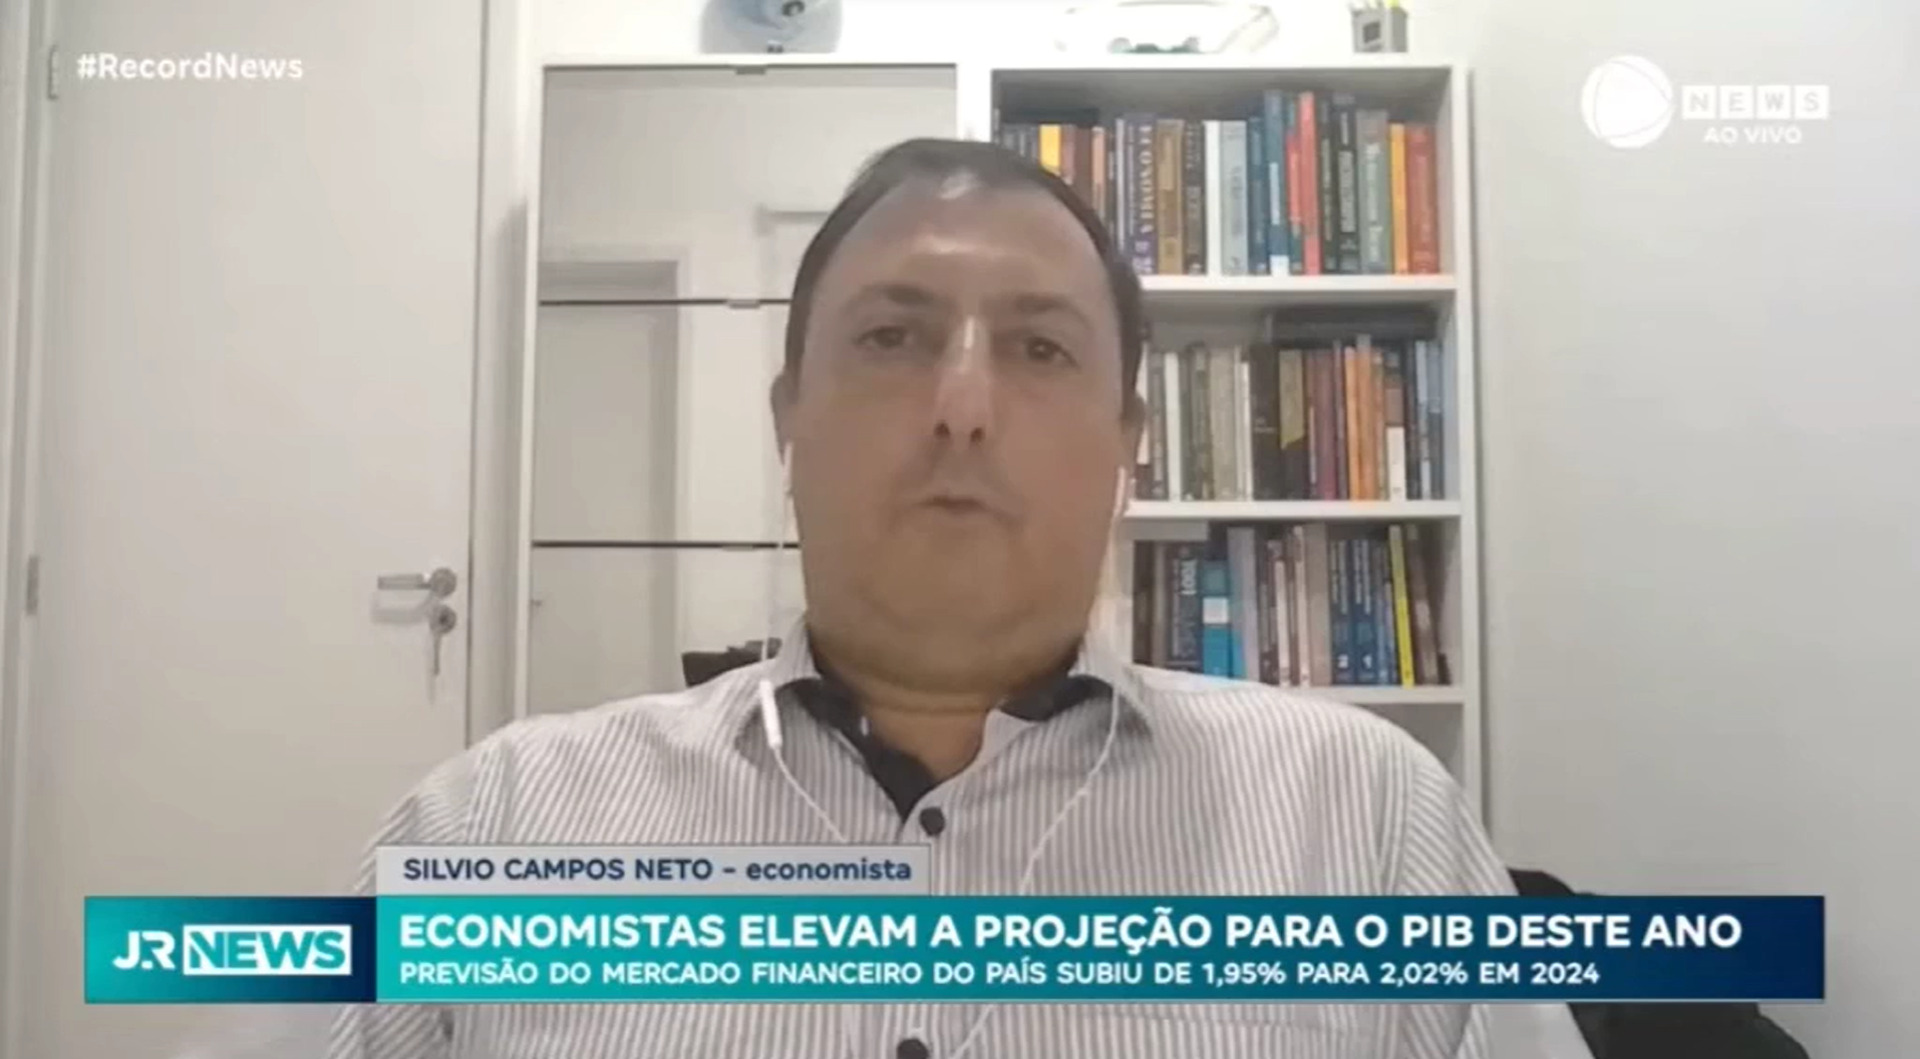 Economistas elevam a projeção para o PIB deste ano: Entrevista com Silvio Campos Neto - economista - Jornal da Record News